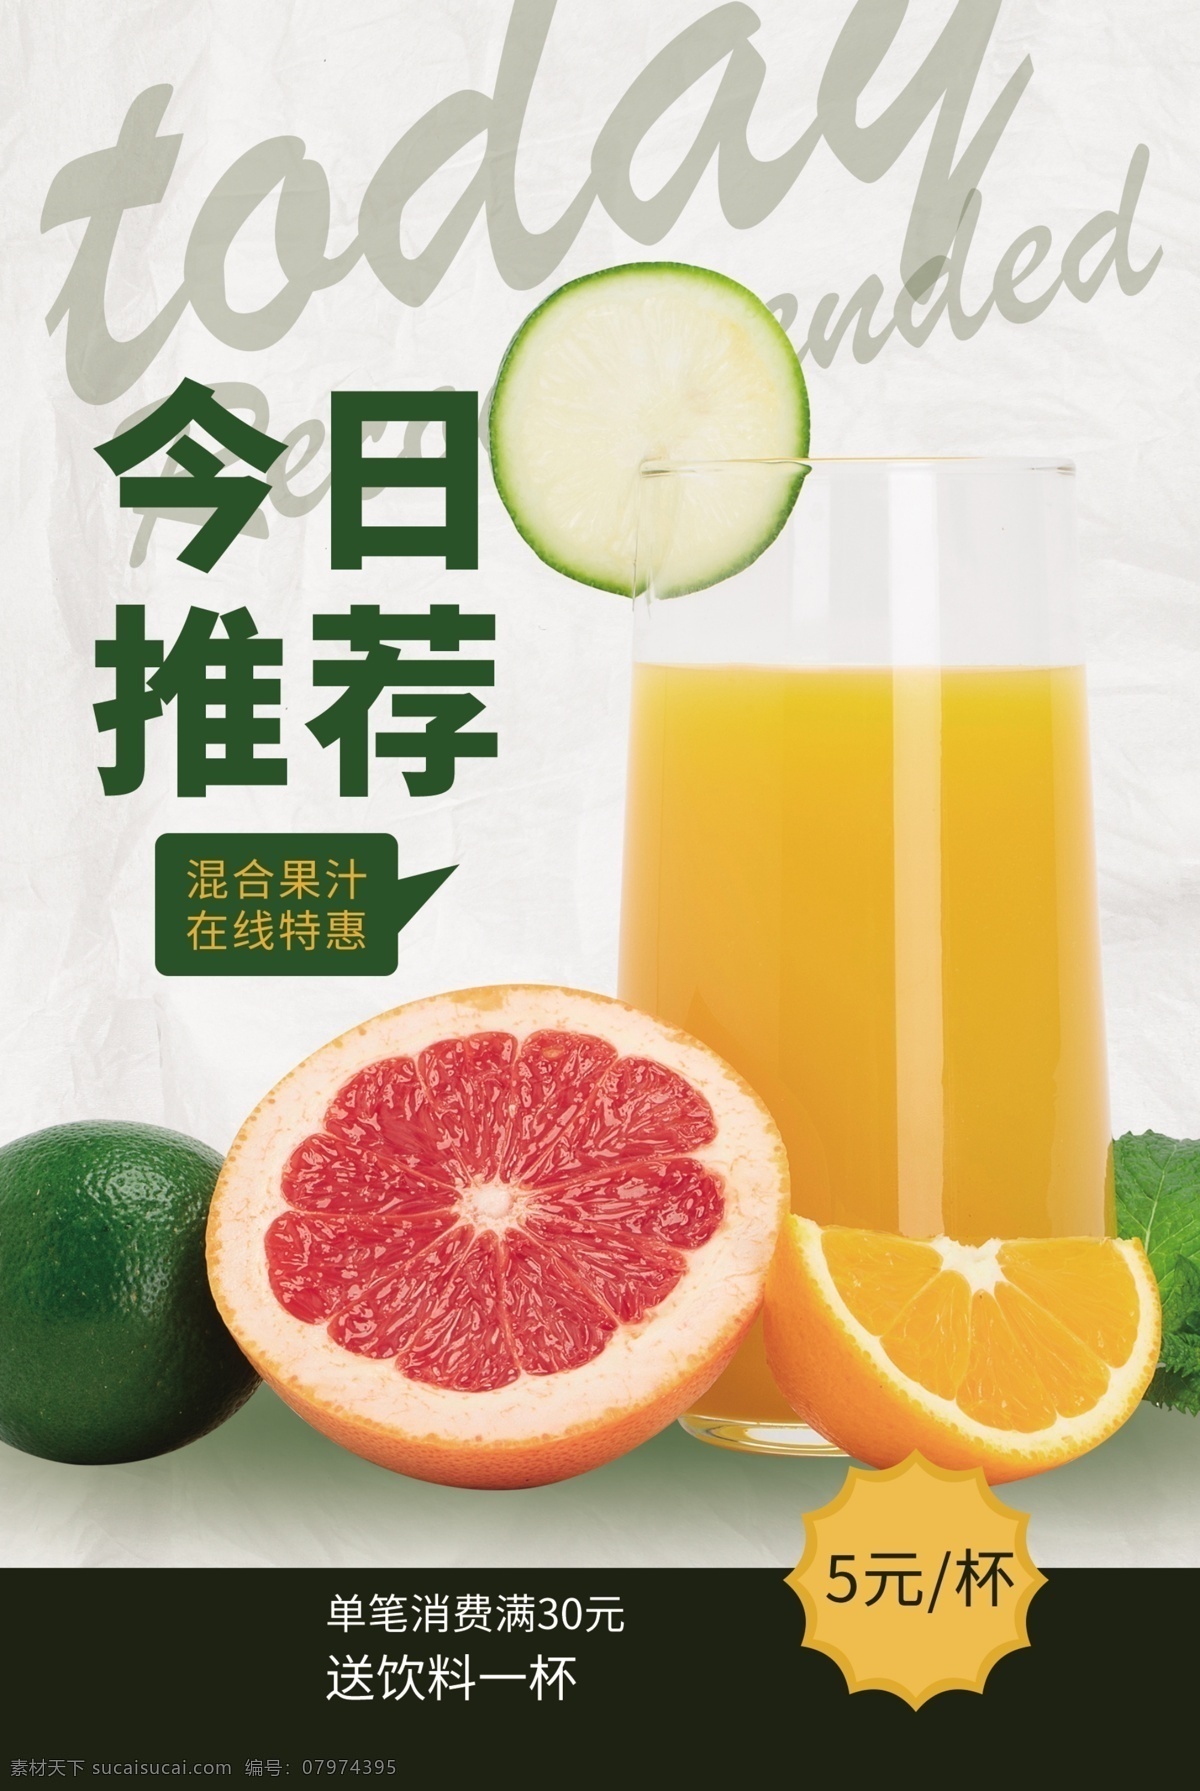 果汁 水果 活动 宣传海报 宣传 海报 饮料 饮品 甜品 类